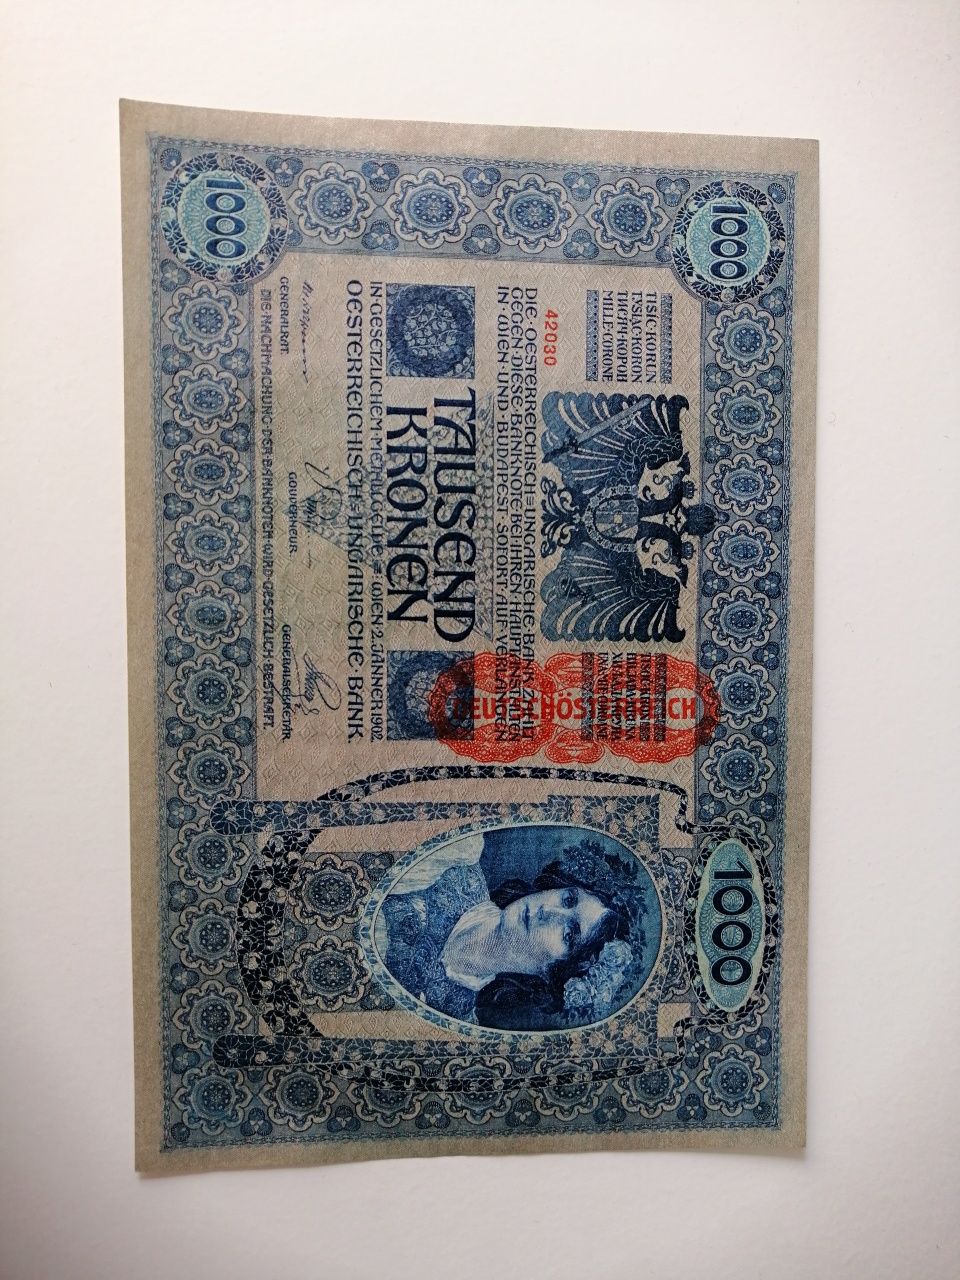 Bancnotă 1000 coroane 1902